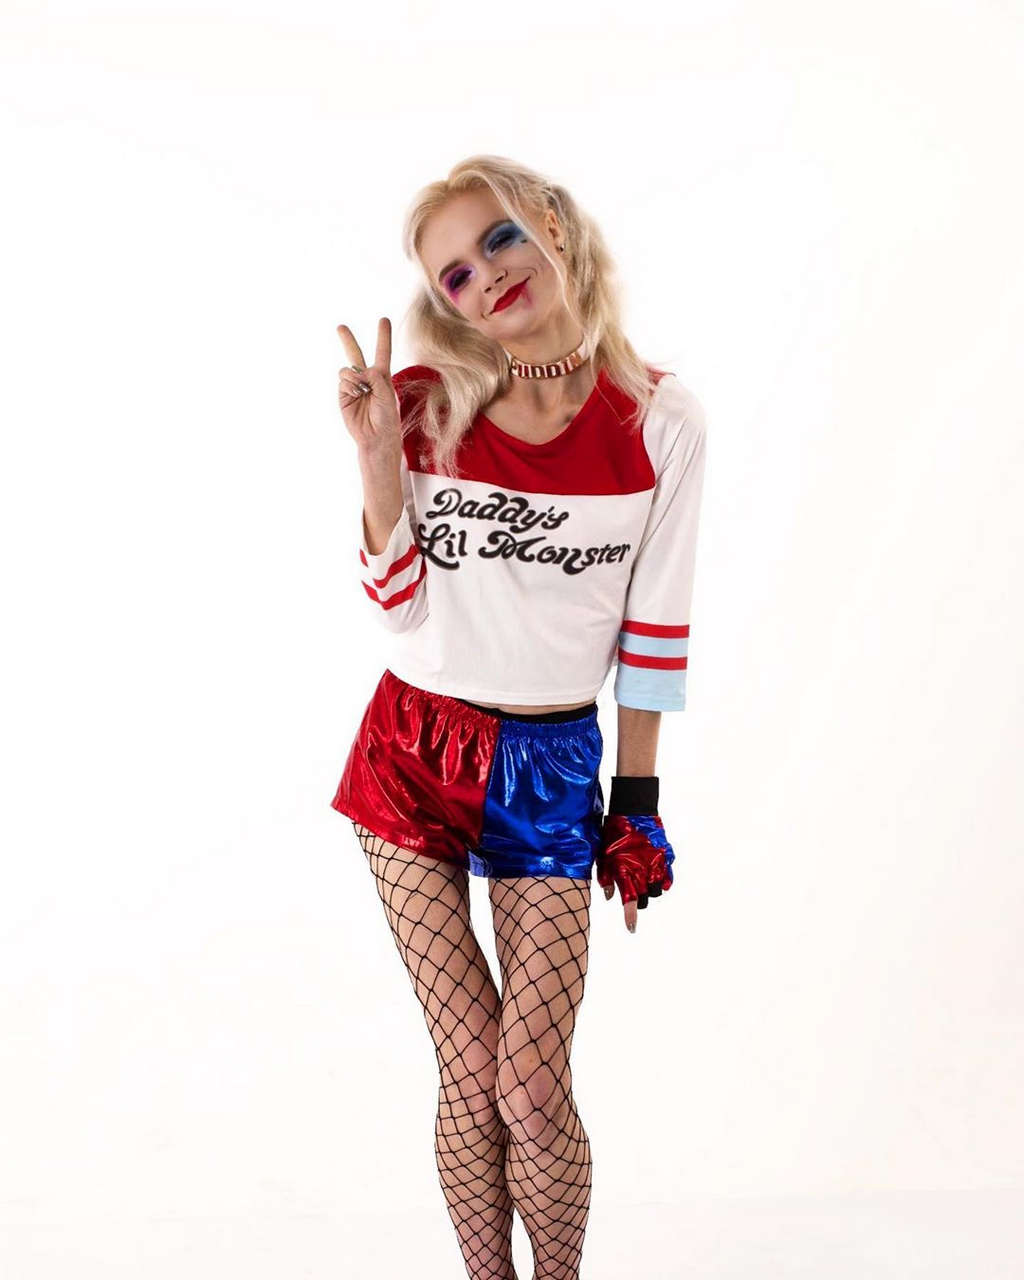 Anastasiia Nesterchuk As The Cutest Harley Quinn Eve